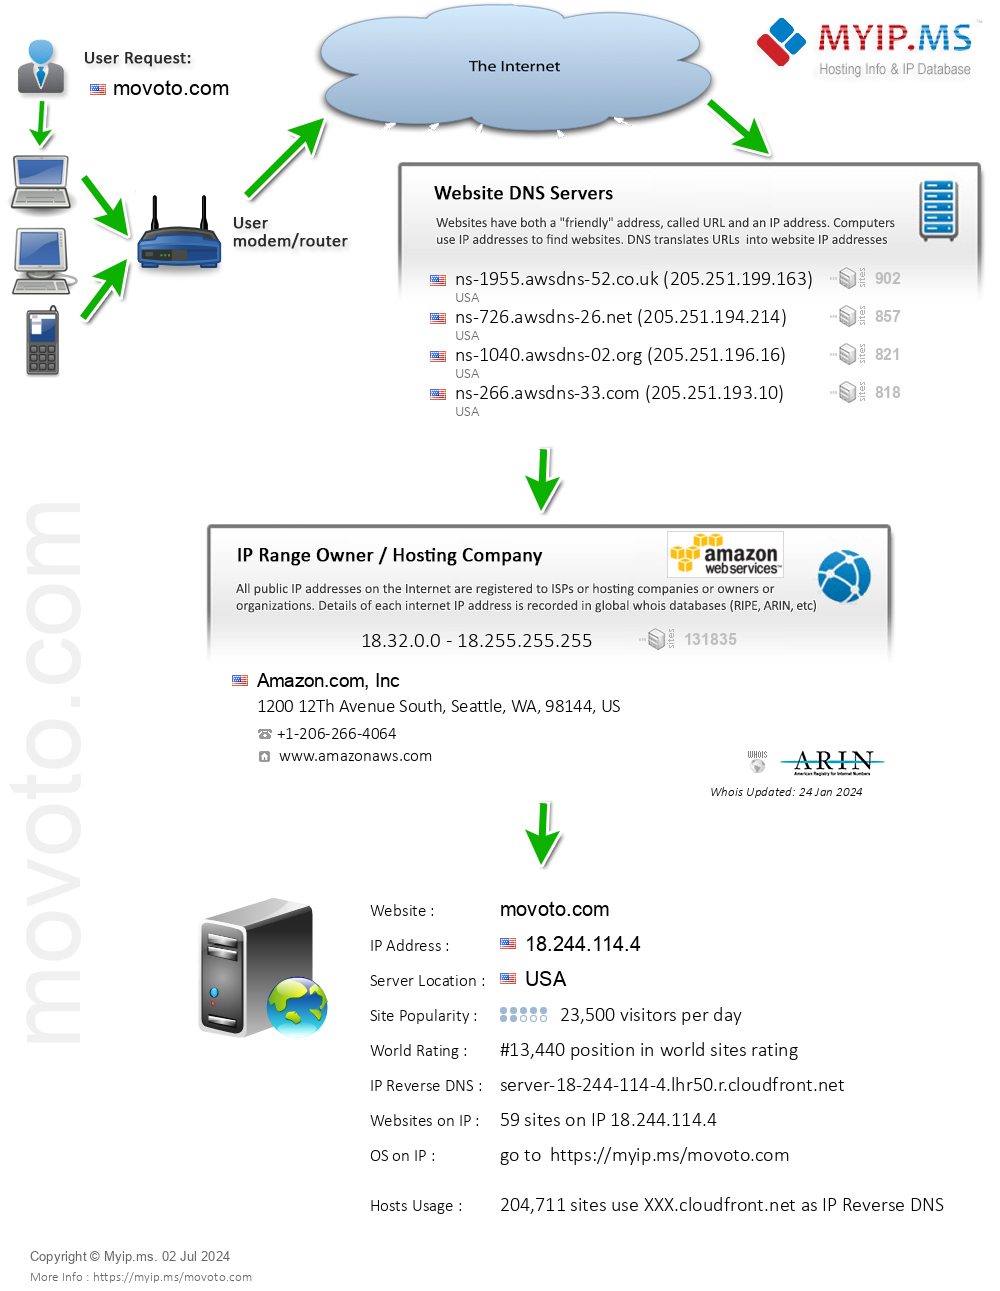 Movoto.com - Website Hosting Visual IP Diagram